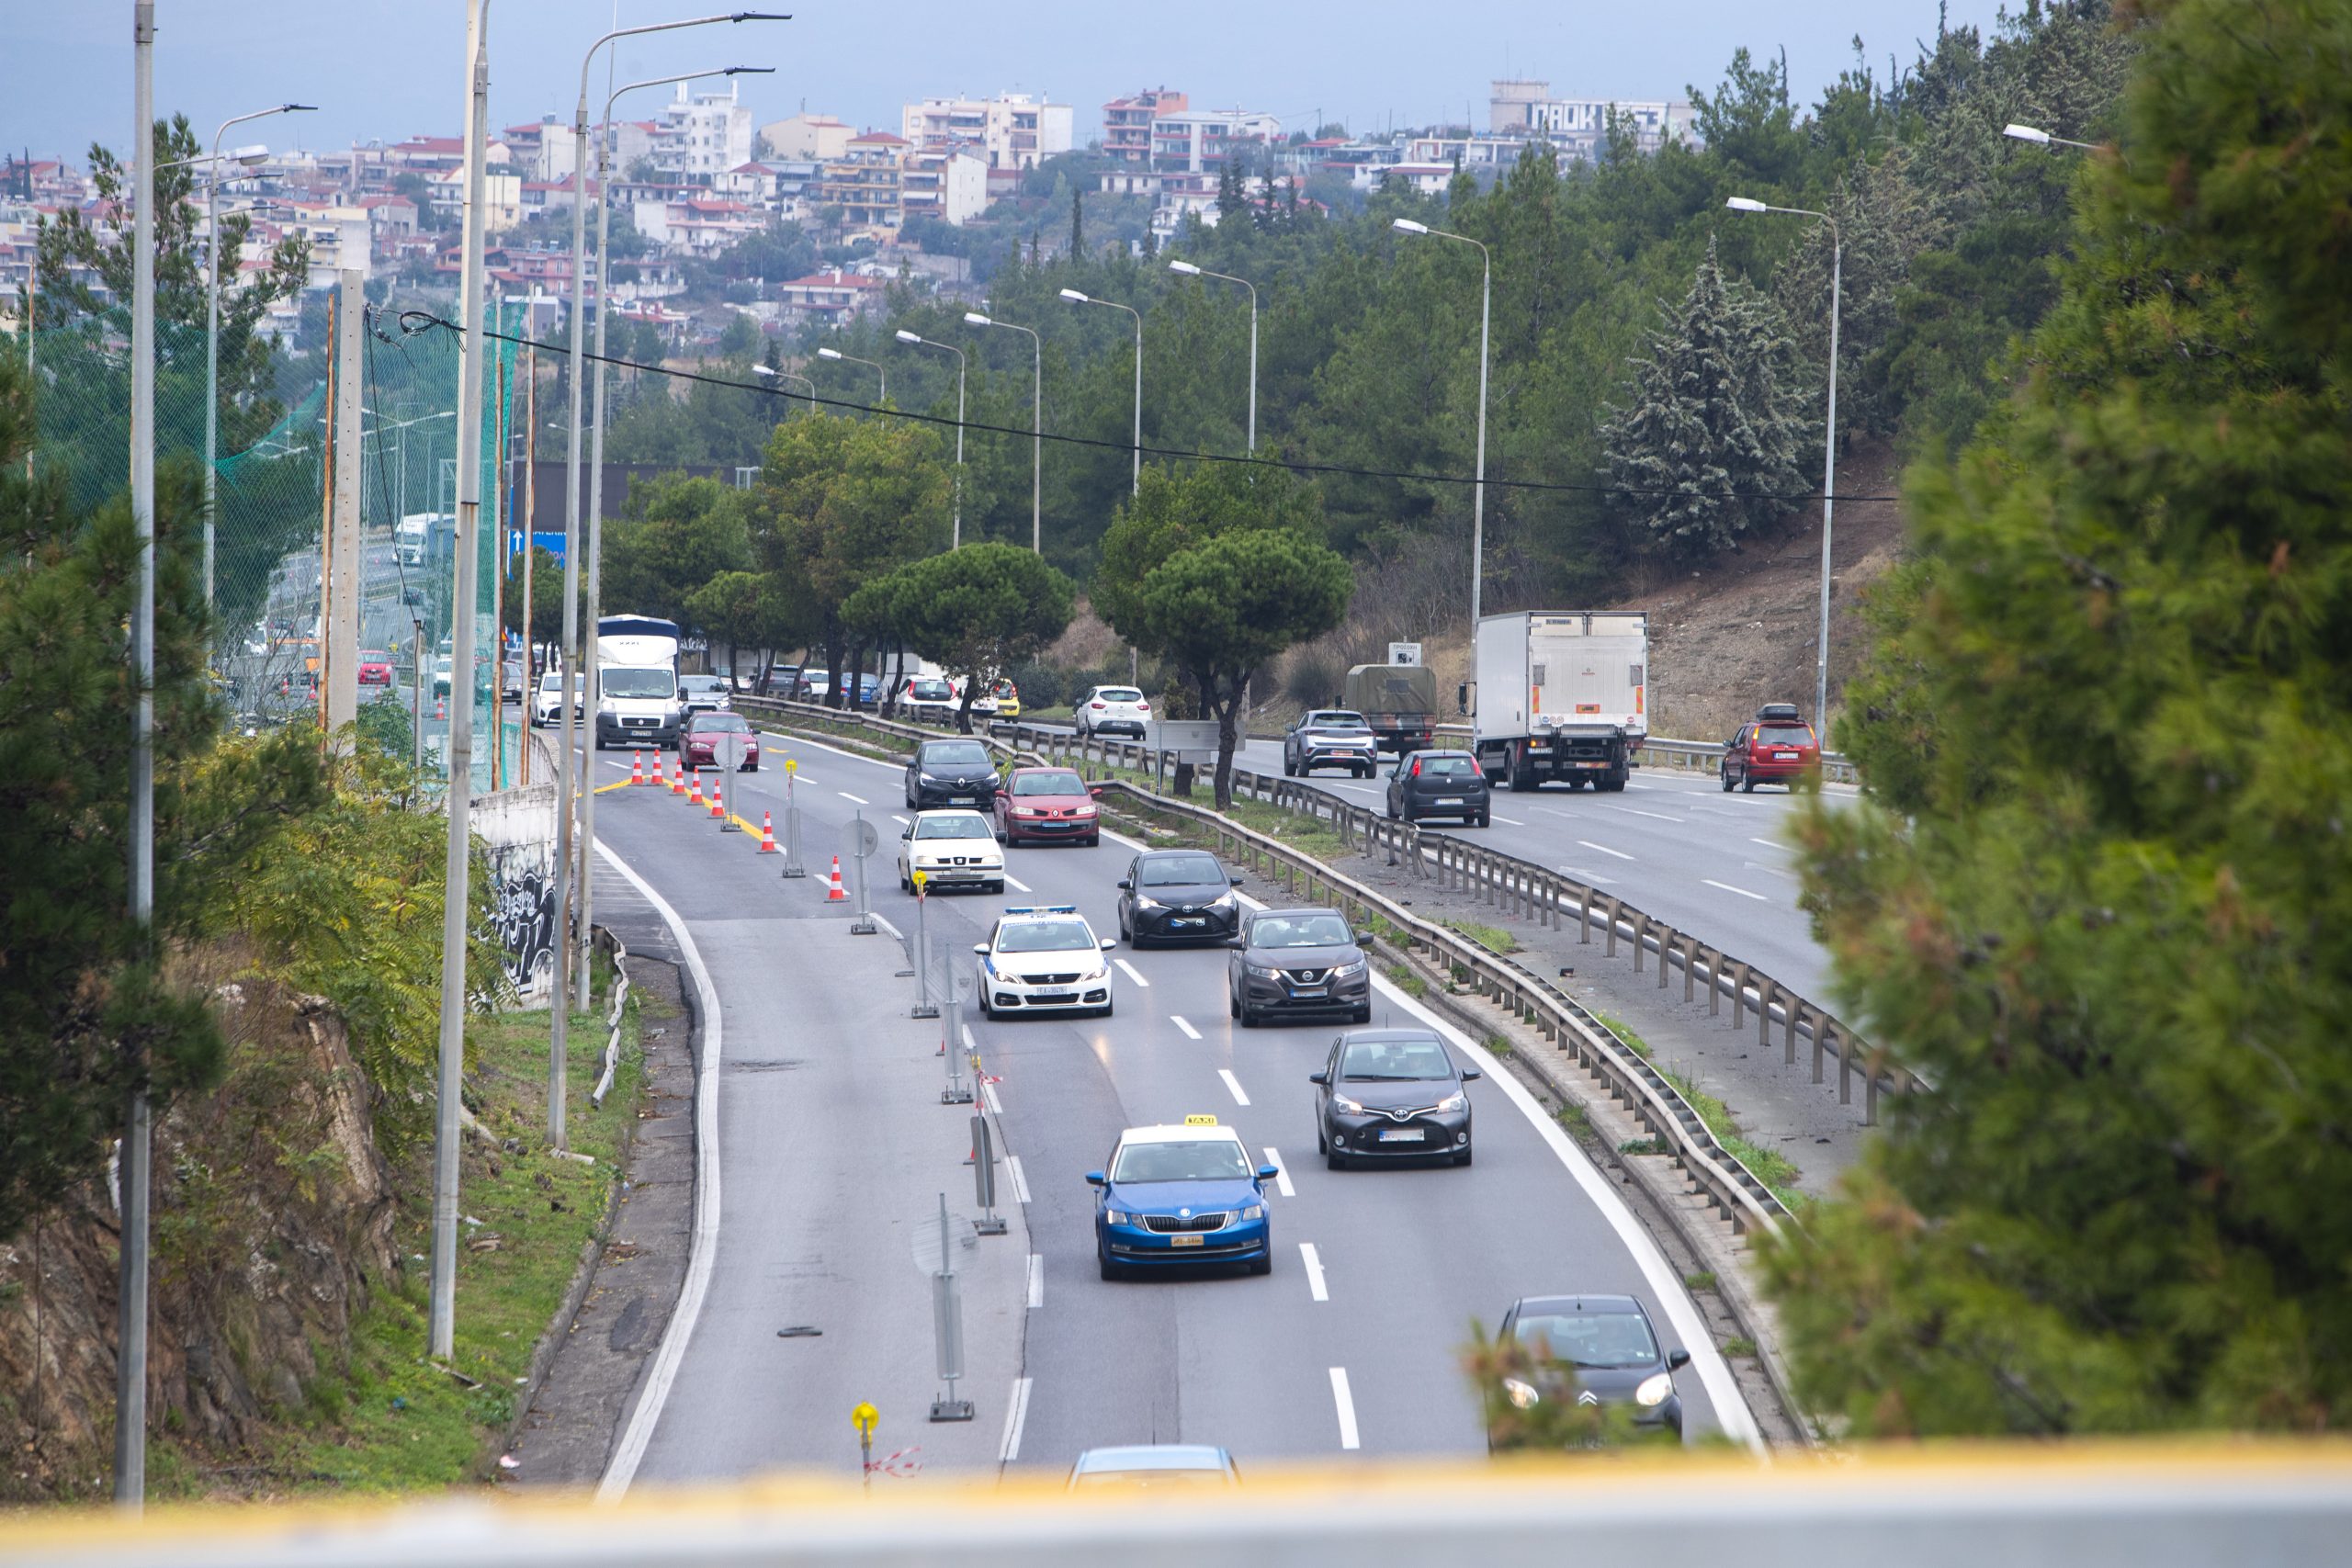 Θεσσαλονίκη: Με απόφαση του ΣτΕ σταματούν προσωρινά οι εργασίες για τον flyover